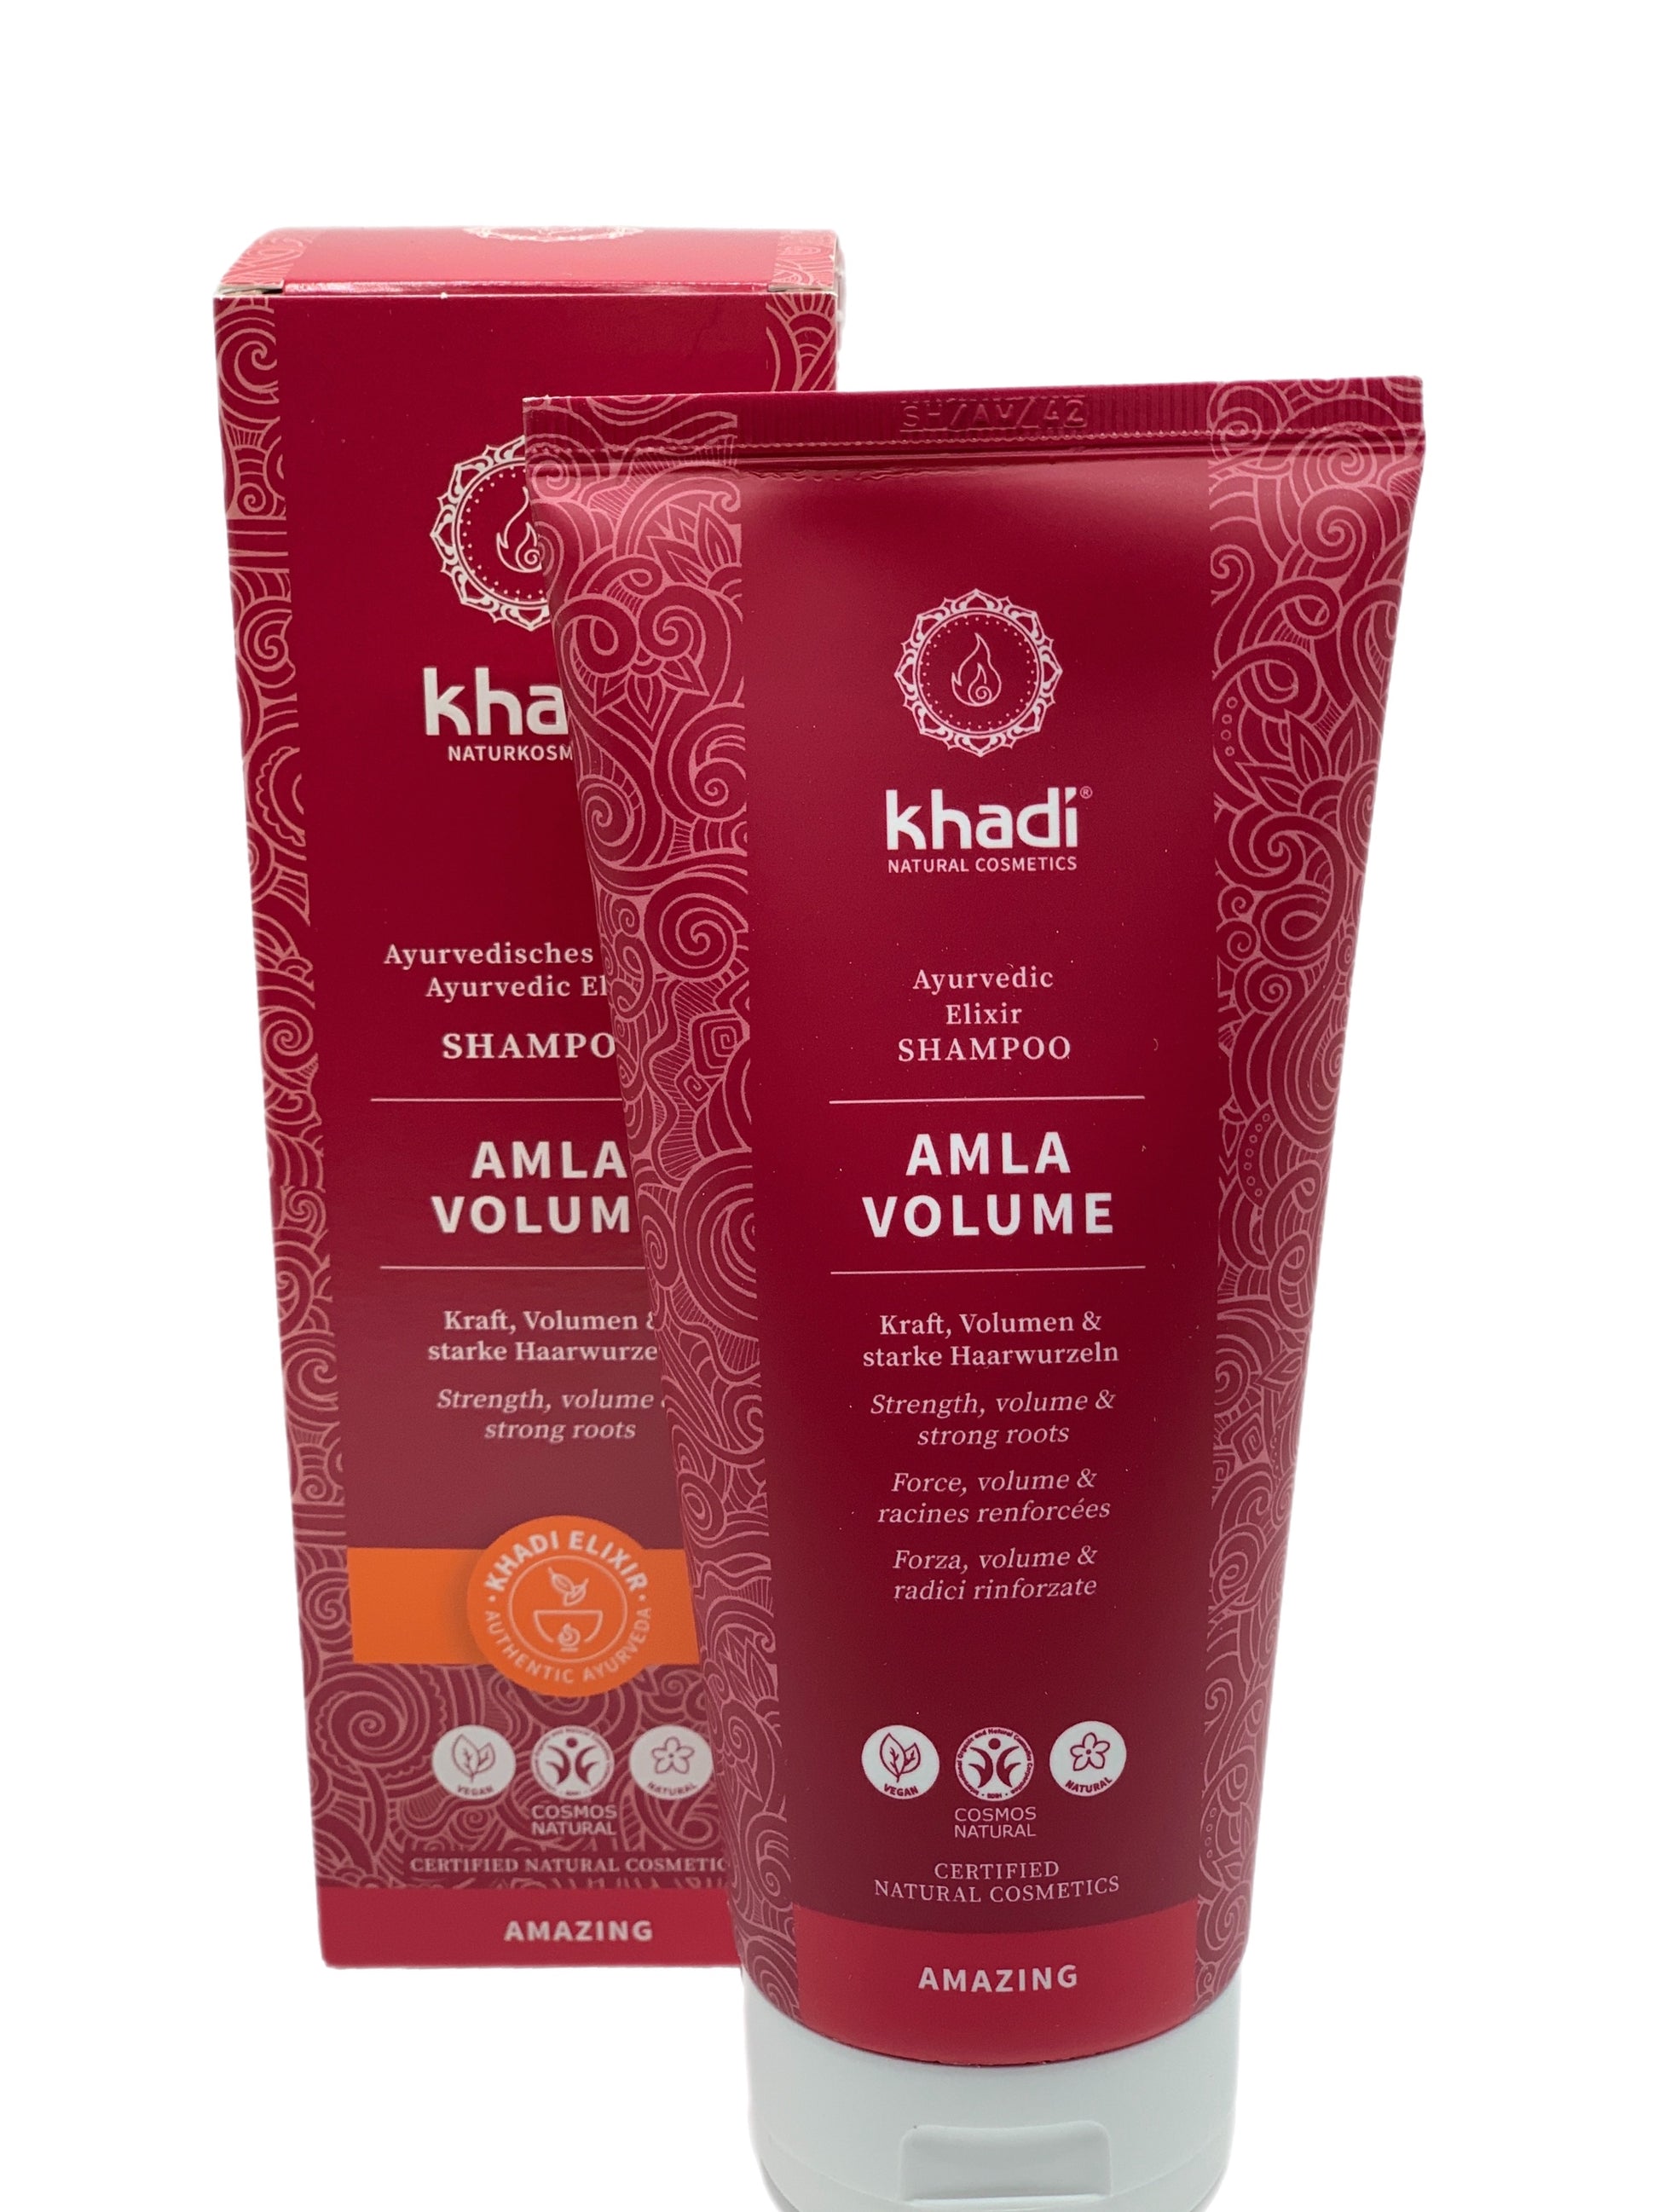 Champú Amla Volumen de Khadi, elixir ayurveda para aportar volumen, brillo y fuerza al cabello. 